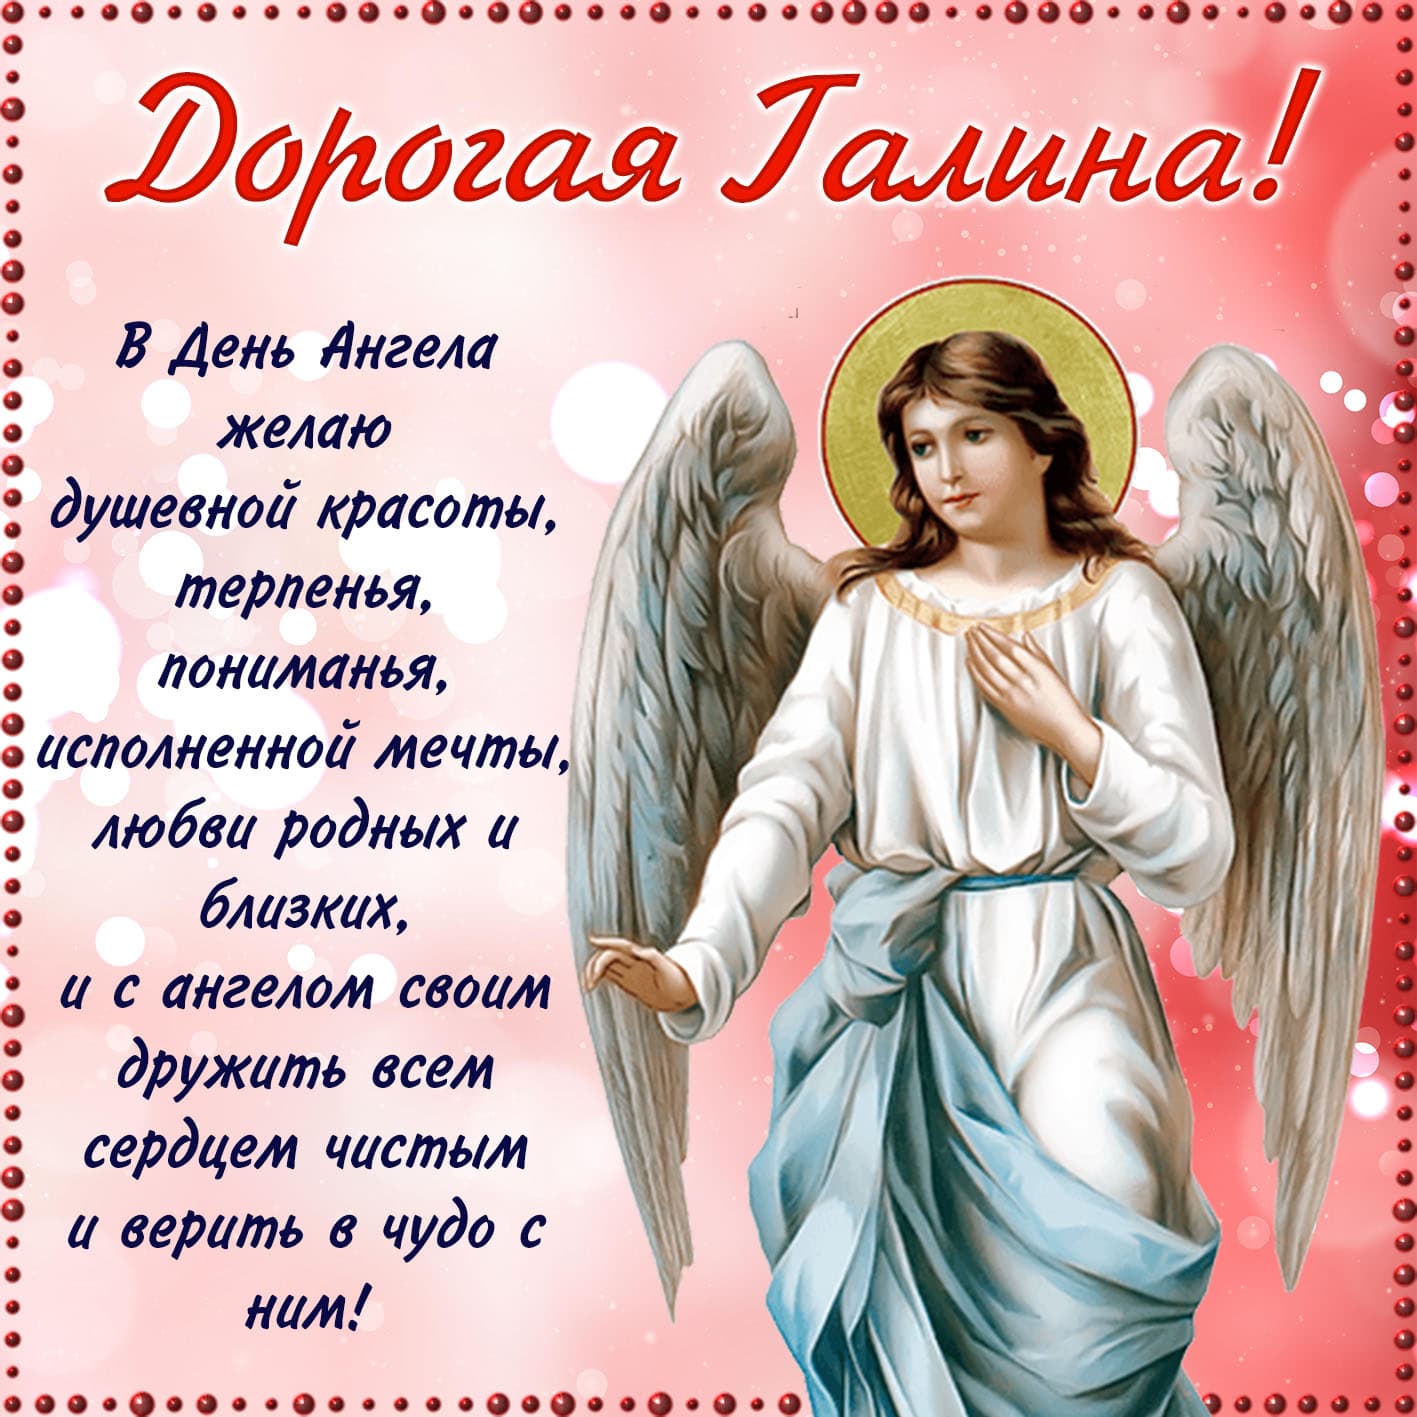 Православная красивая открытка дорогой галине на день ангела